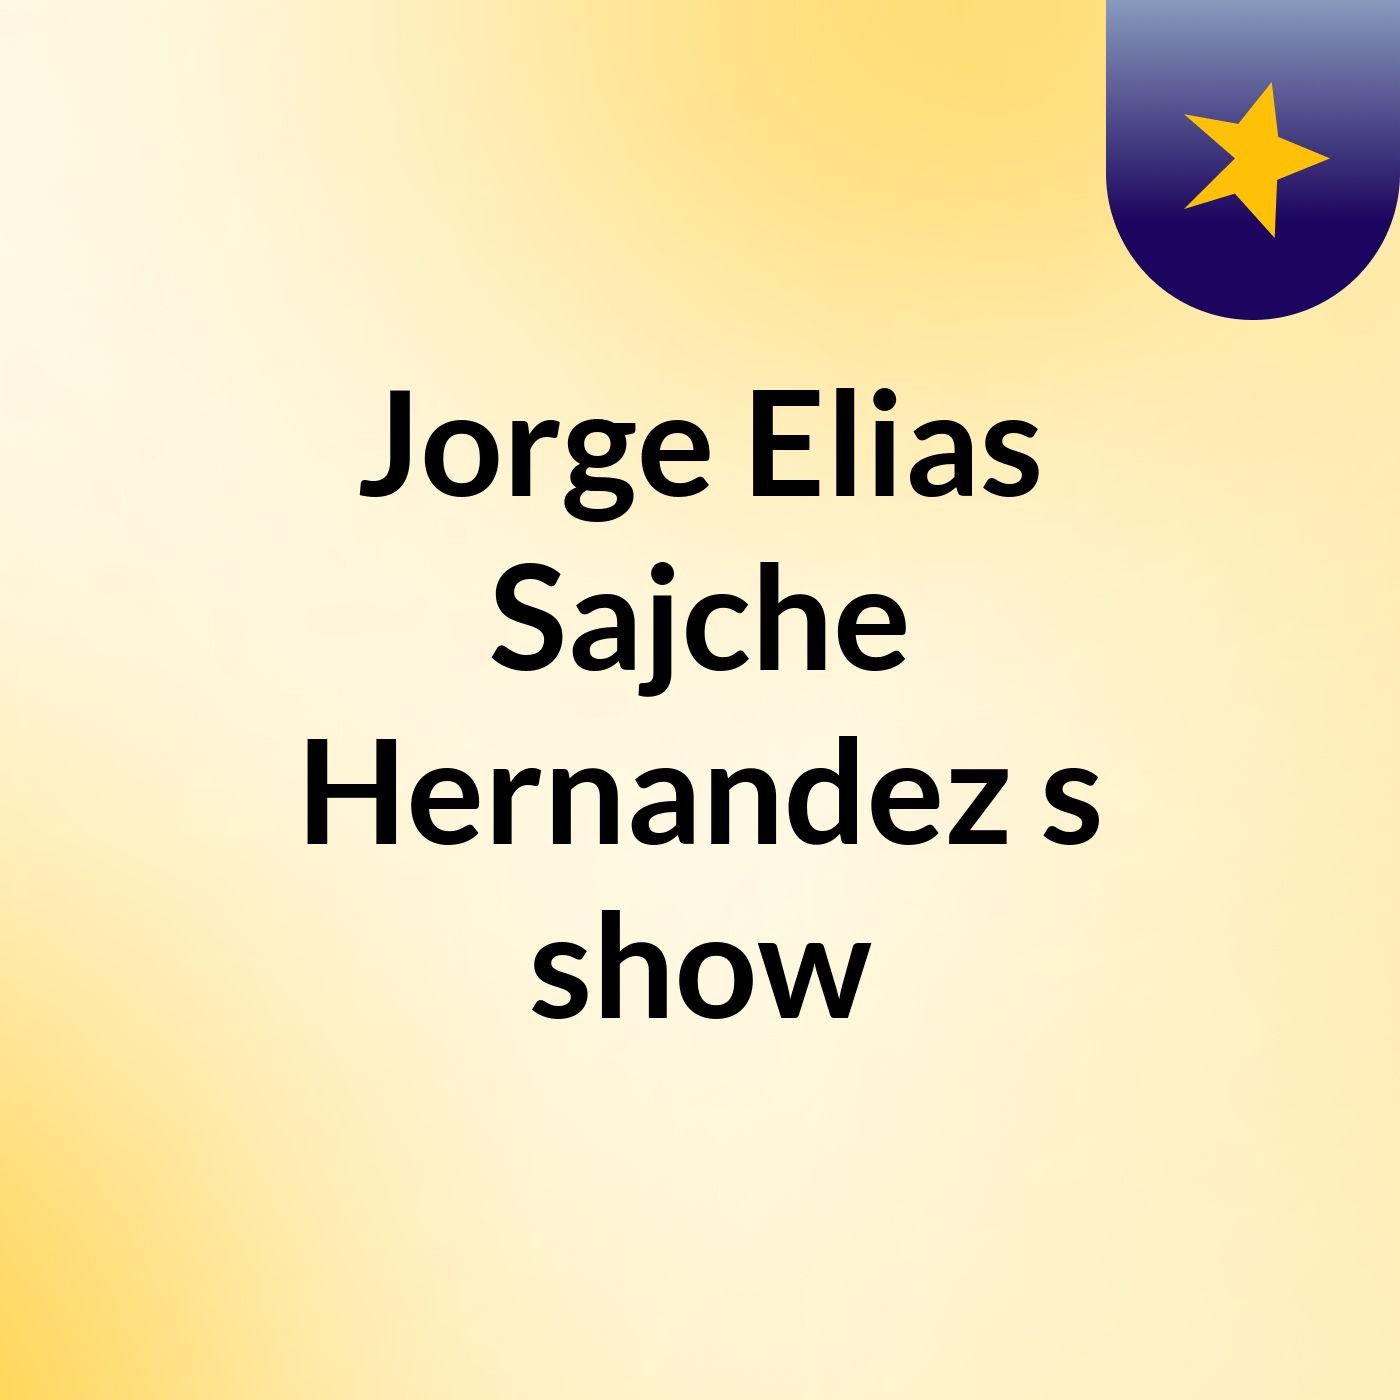 Jorge Elias Sajche Hernandez's show